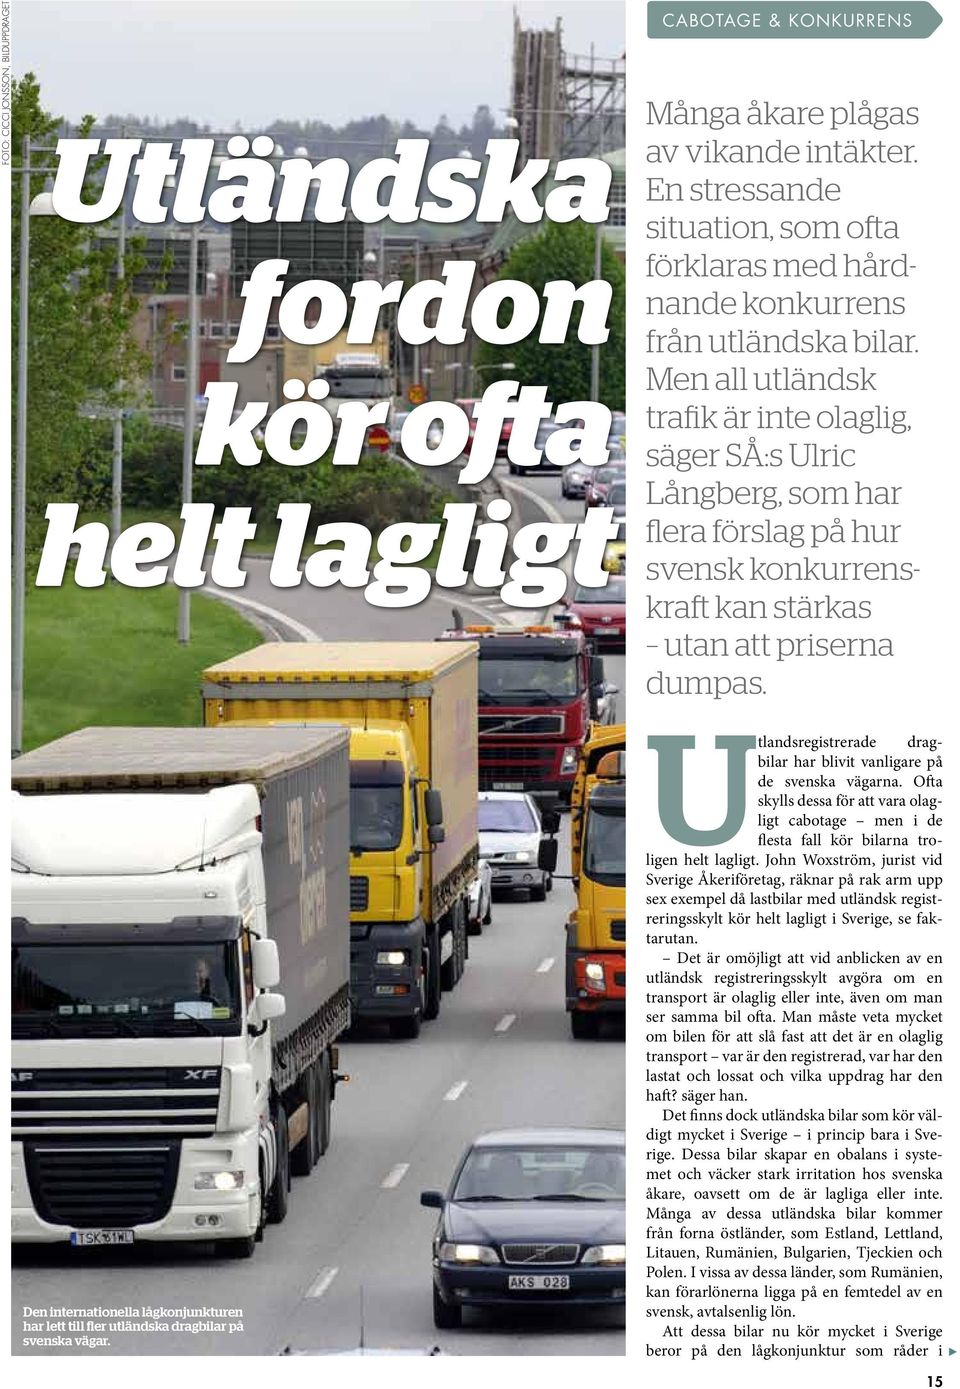 Men all utländsk trafik är inte olaglig, säger SÅ:s Ulric Långberg, som har flera förslag på hur svensk kon kurrenskraft kan stärkas utan att priserna dumpas.